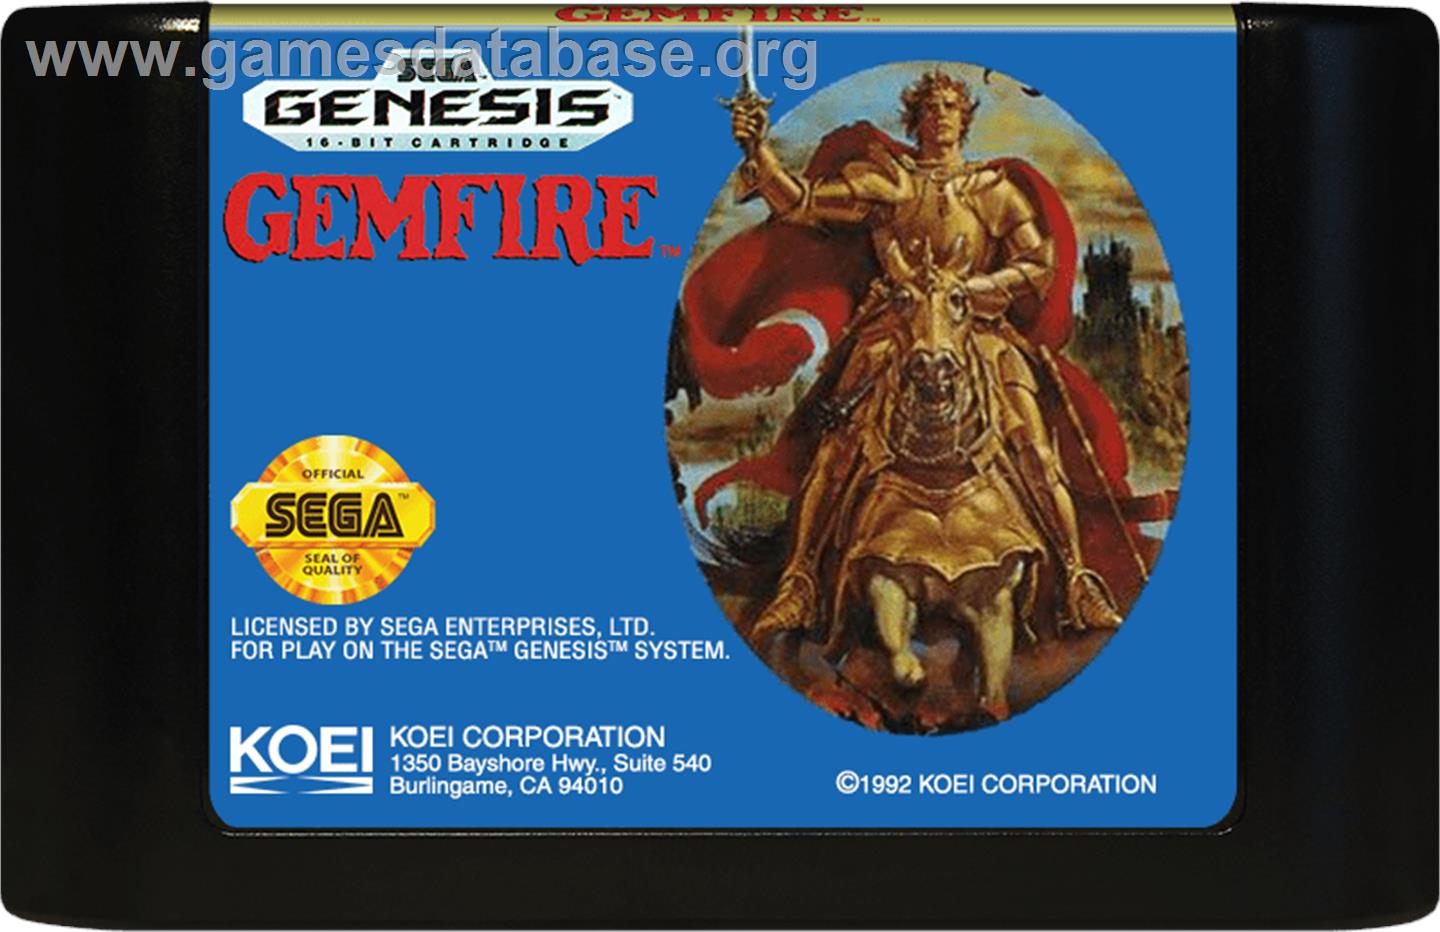 Gemfire - Sega Genesis - Artwork - Cartridge